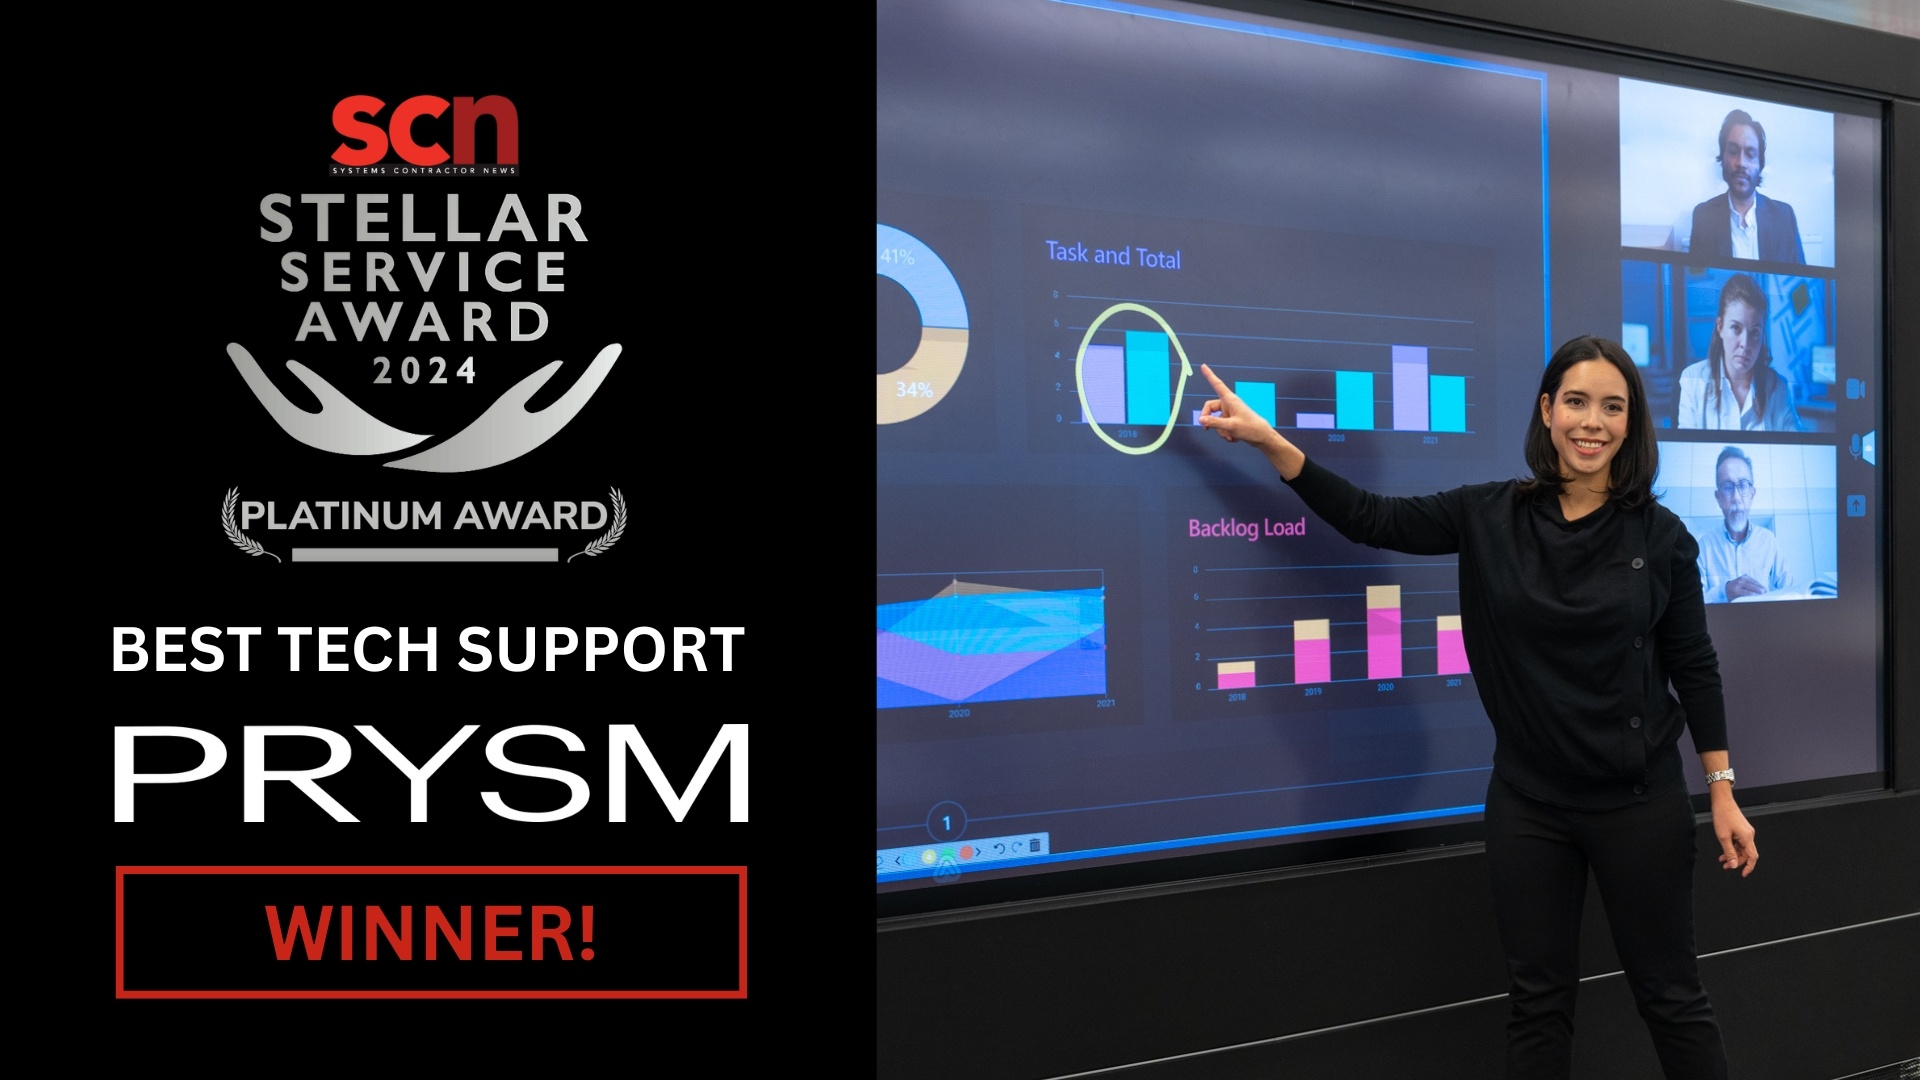 Prysm_SCN-Service-Award